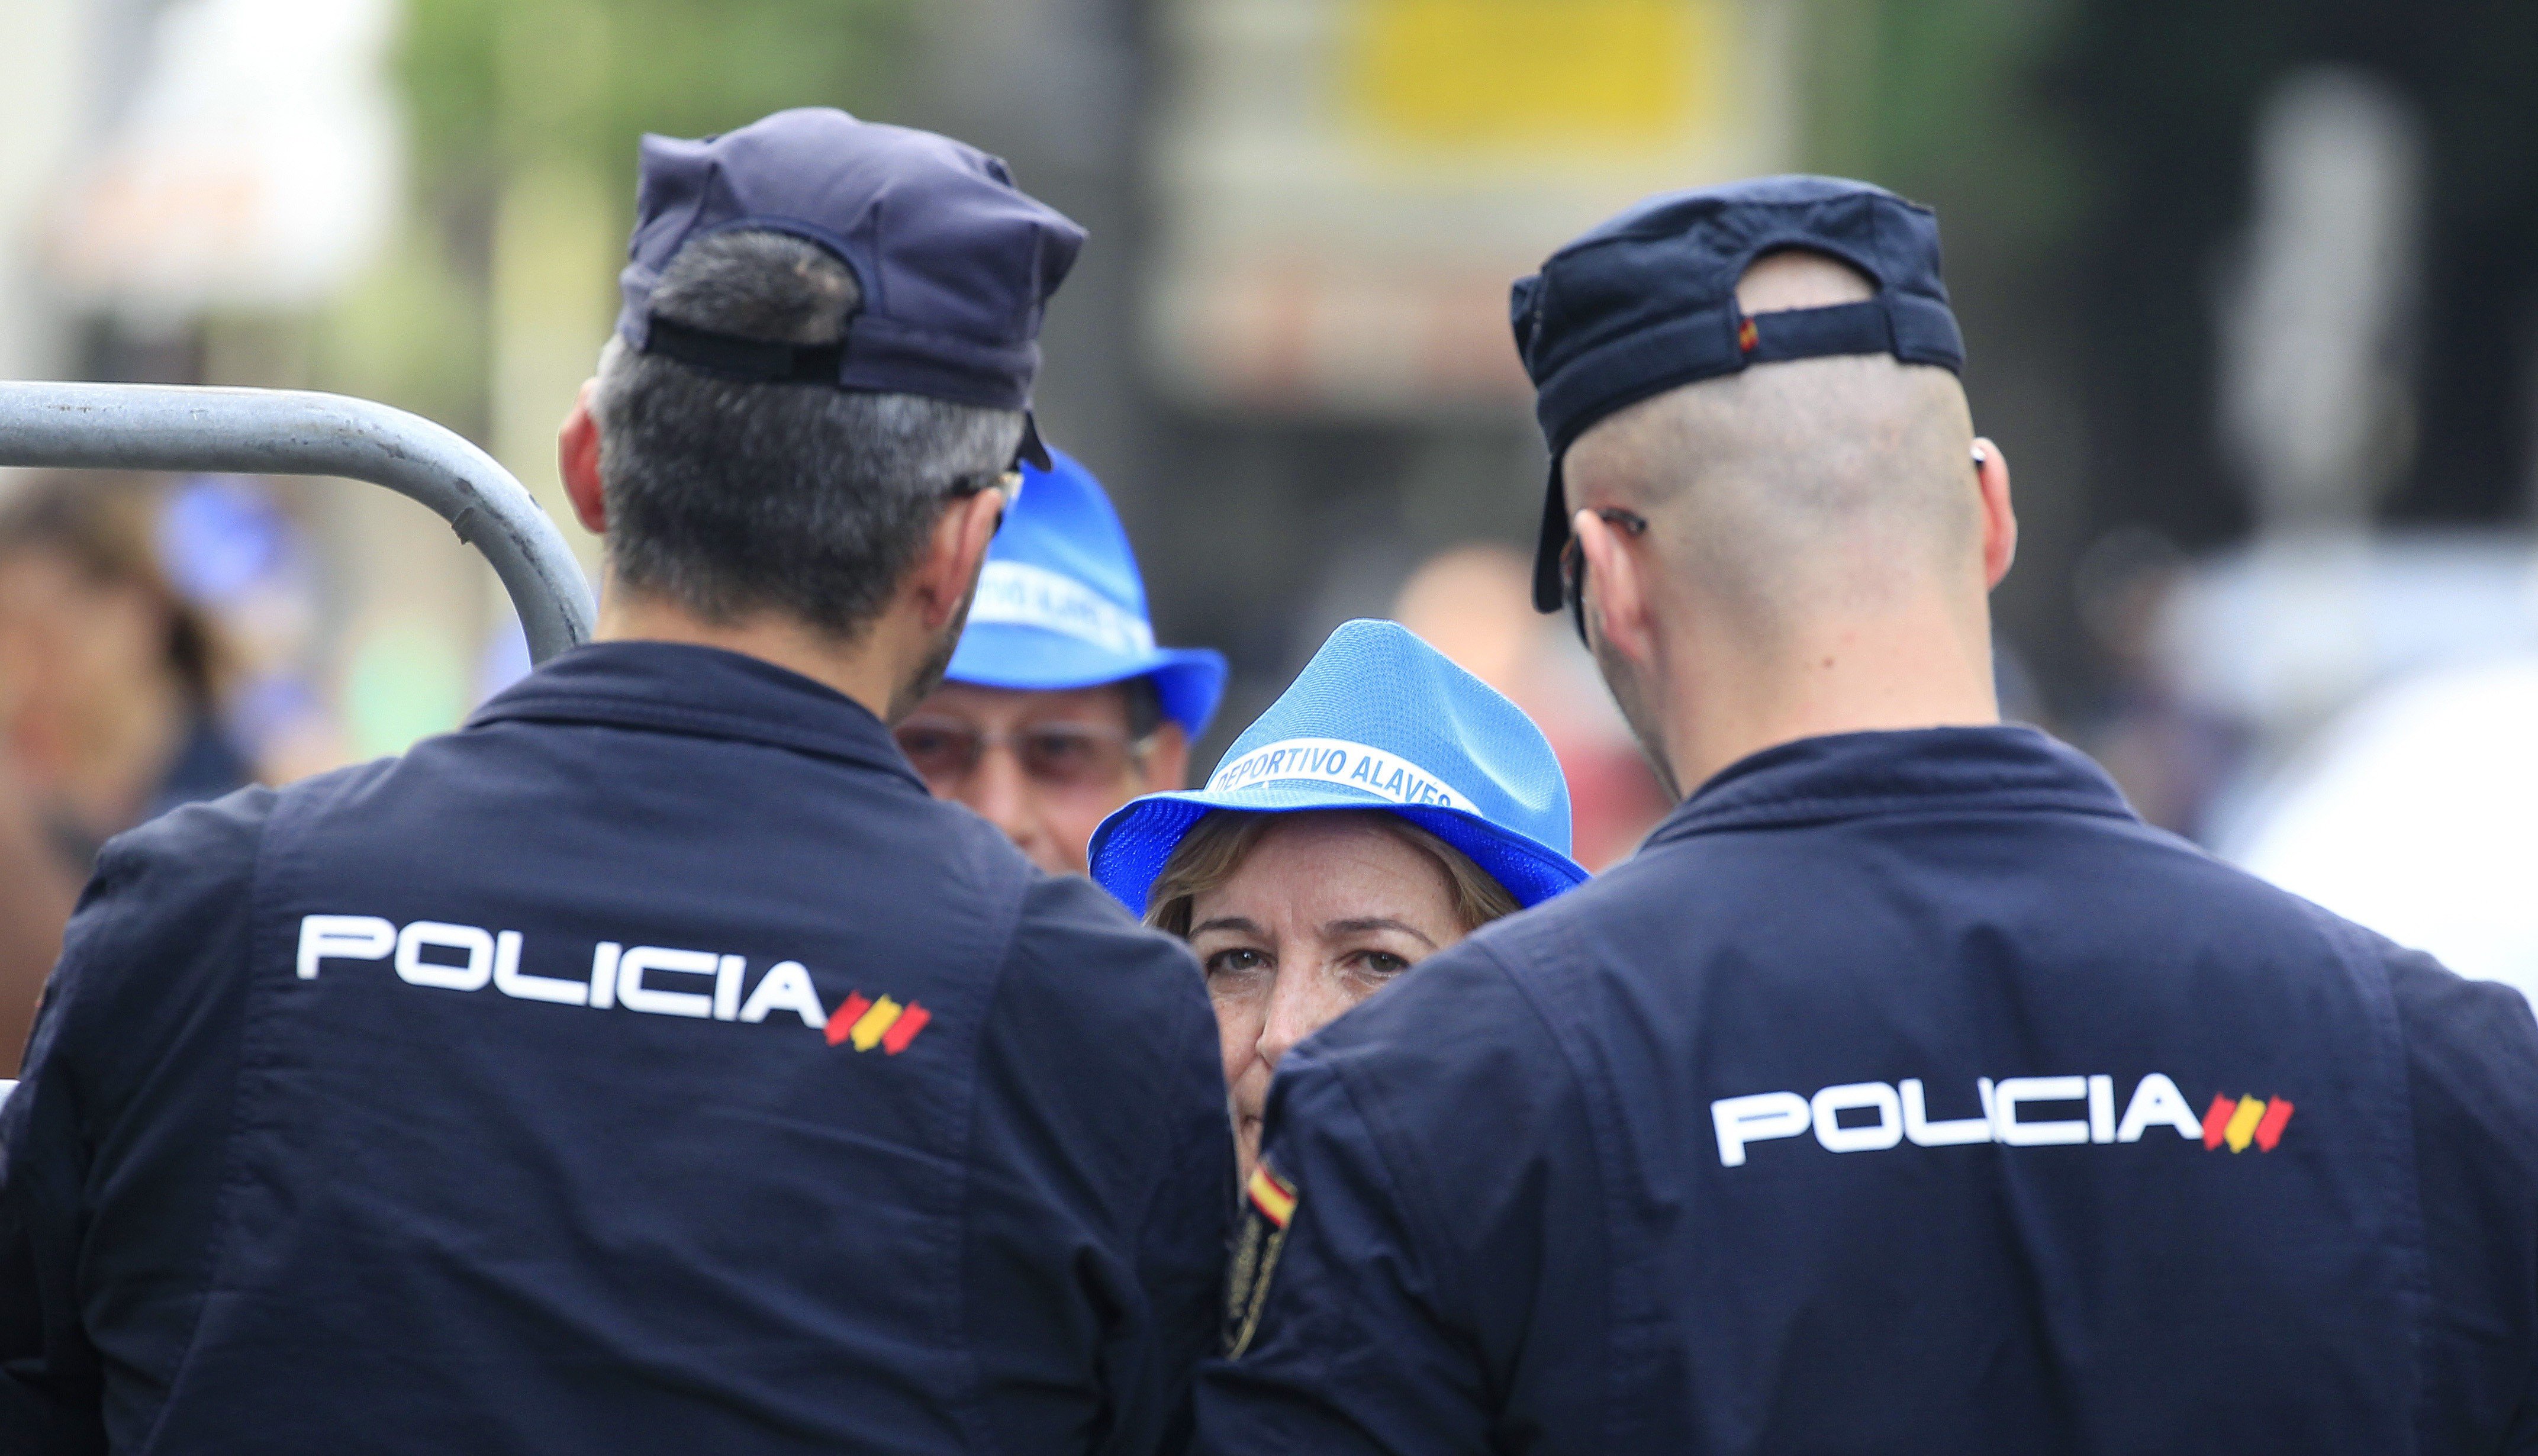 La Policía busca voluntarios para desplazarse a Catalunya ante el 1-O